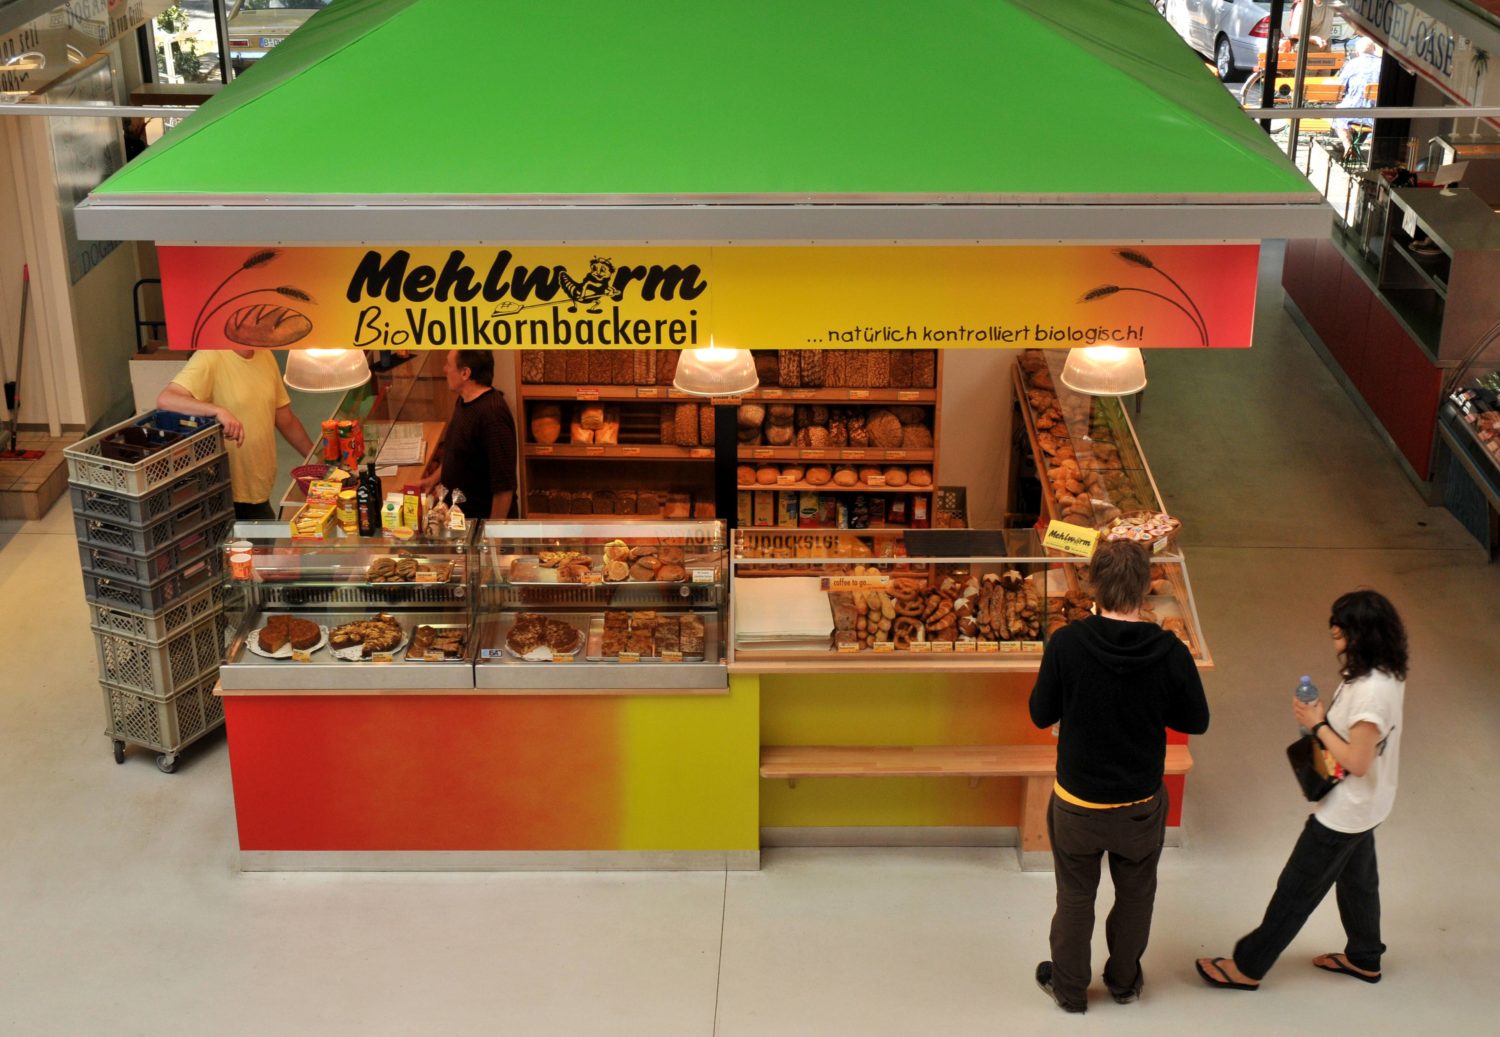 Bäckereien in Kreuzberg: Stand der Mehlwurm Bio-Vollkornbäckerei in der Marheineke-Markthalle. Foto: Imago/Schöning 